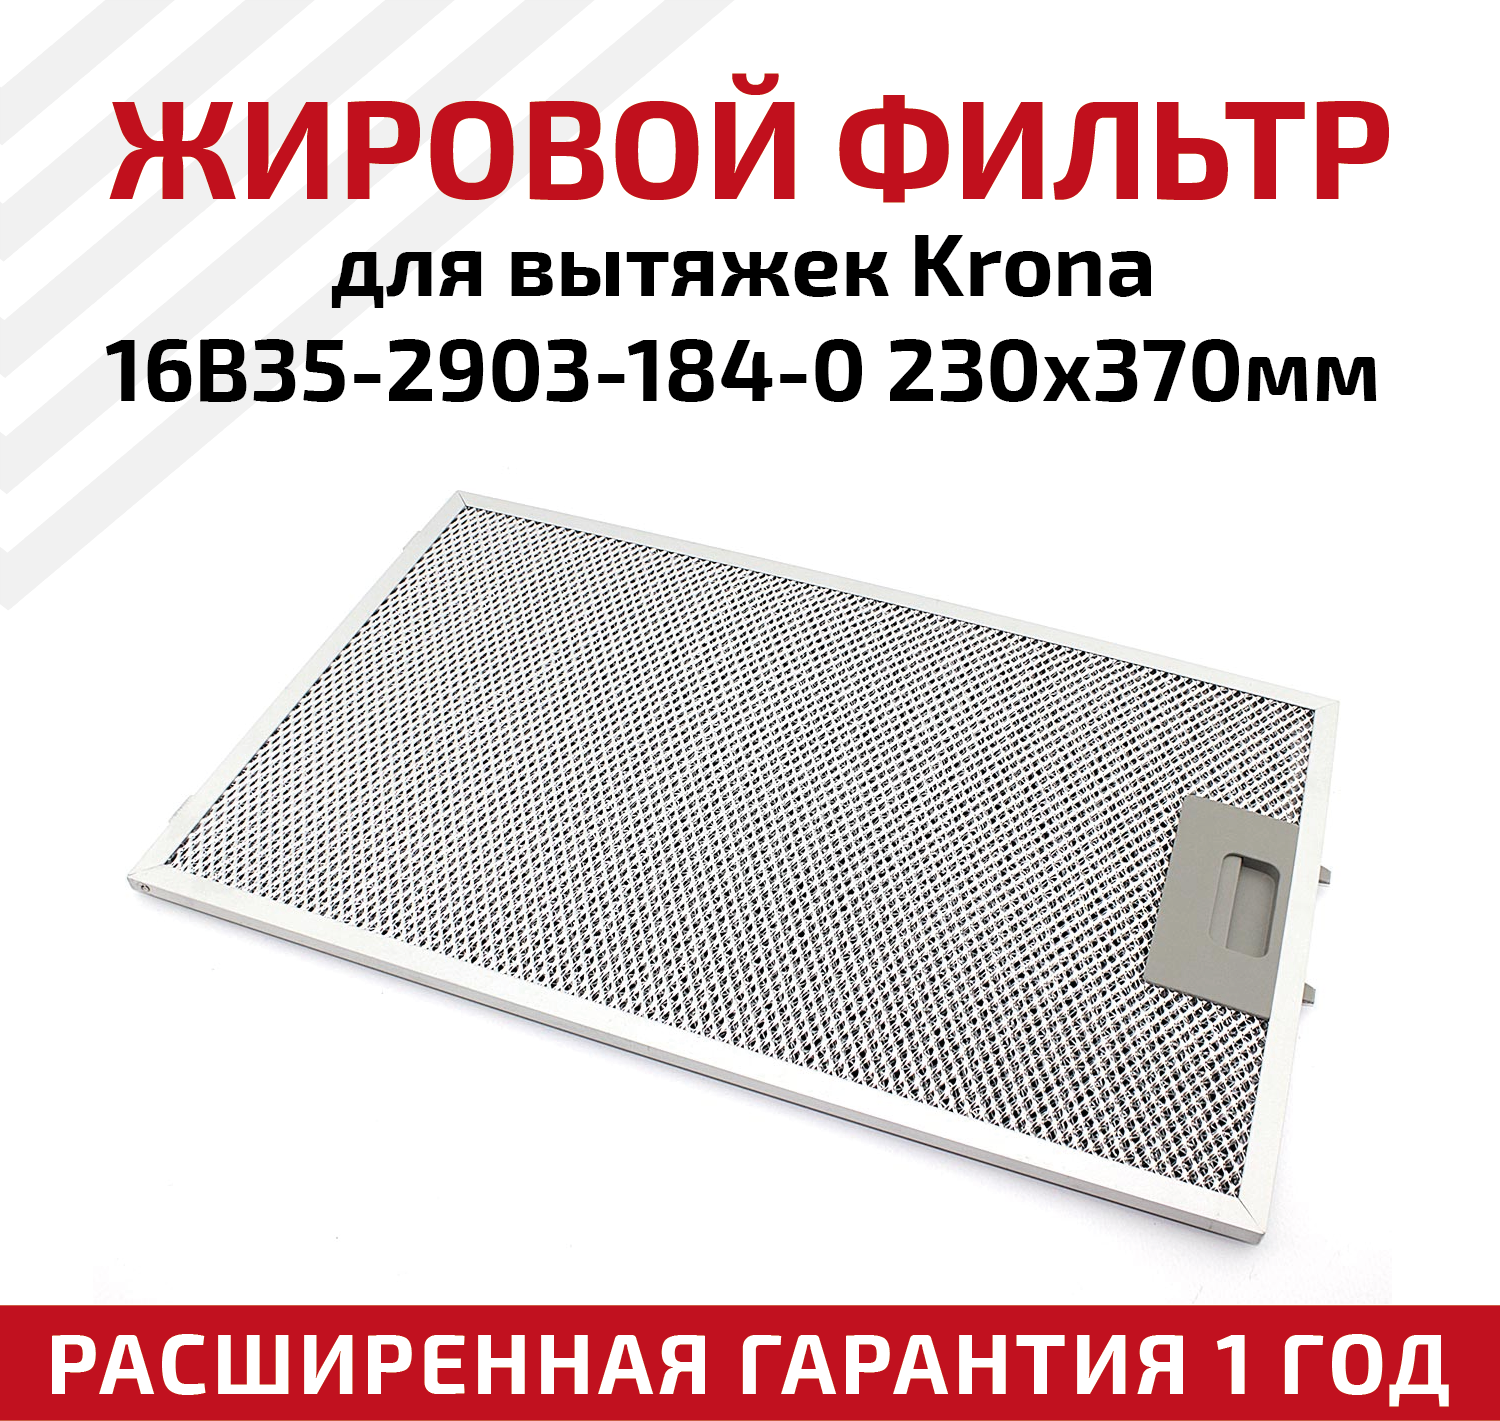 Жировой фильтр (кассета) алюминиевый (металлический) рамочный для вытяжек Krona 16B35-2903-184-0 многоразовый 230х370мм